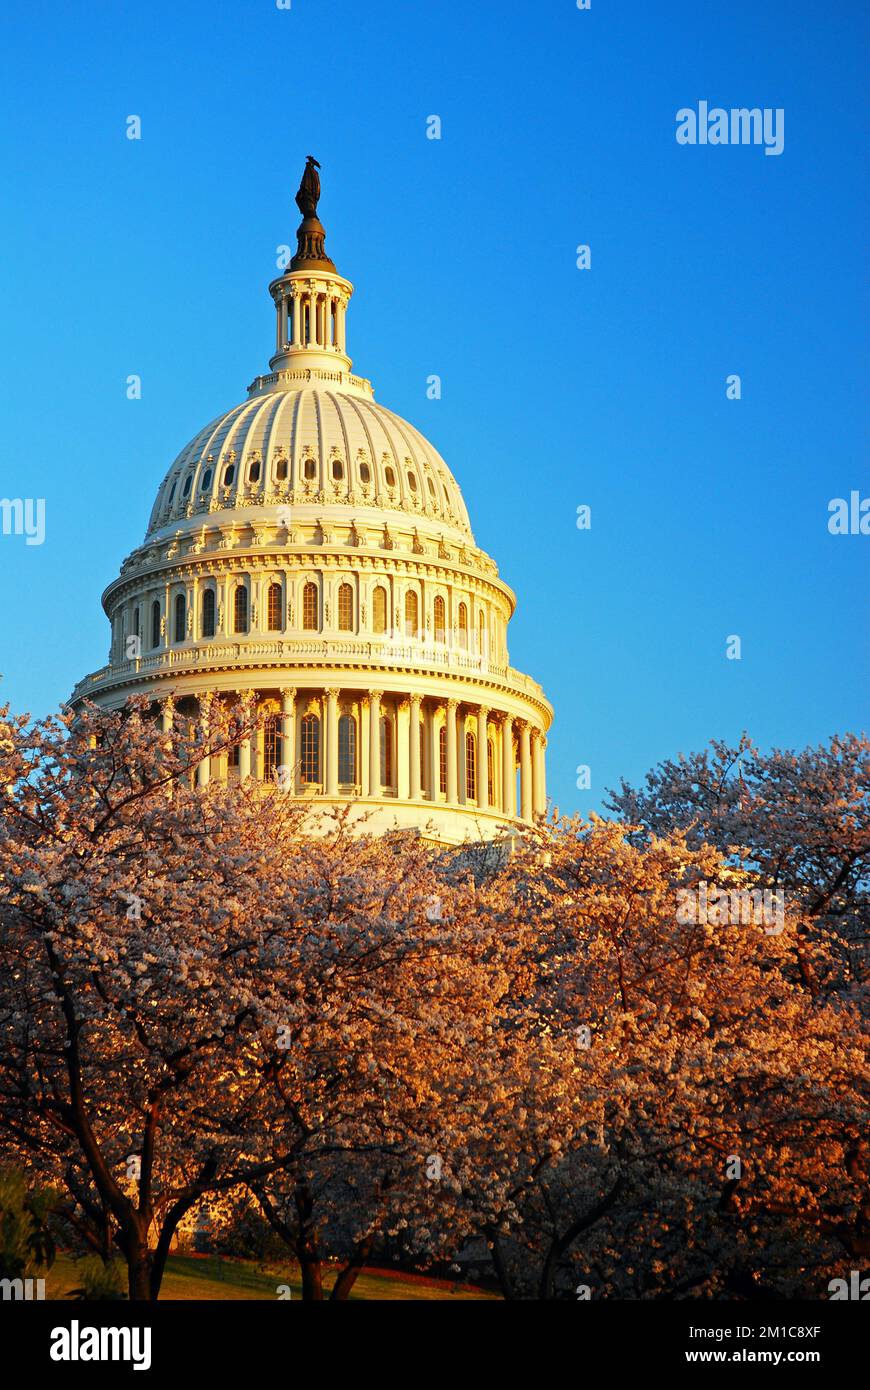 El Capitolio de los EE.UU. Se eleva por encima de los cerezos en flor en un día de primavera en Washington, DC Foto de stock